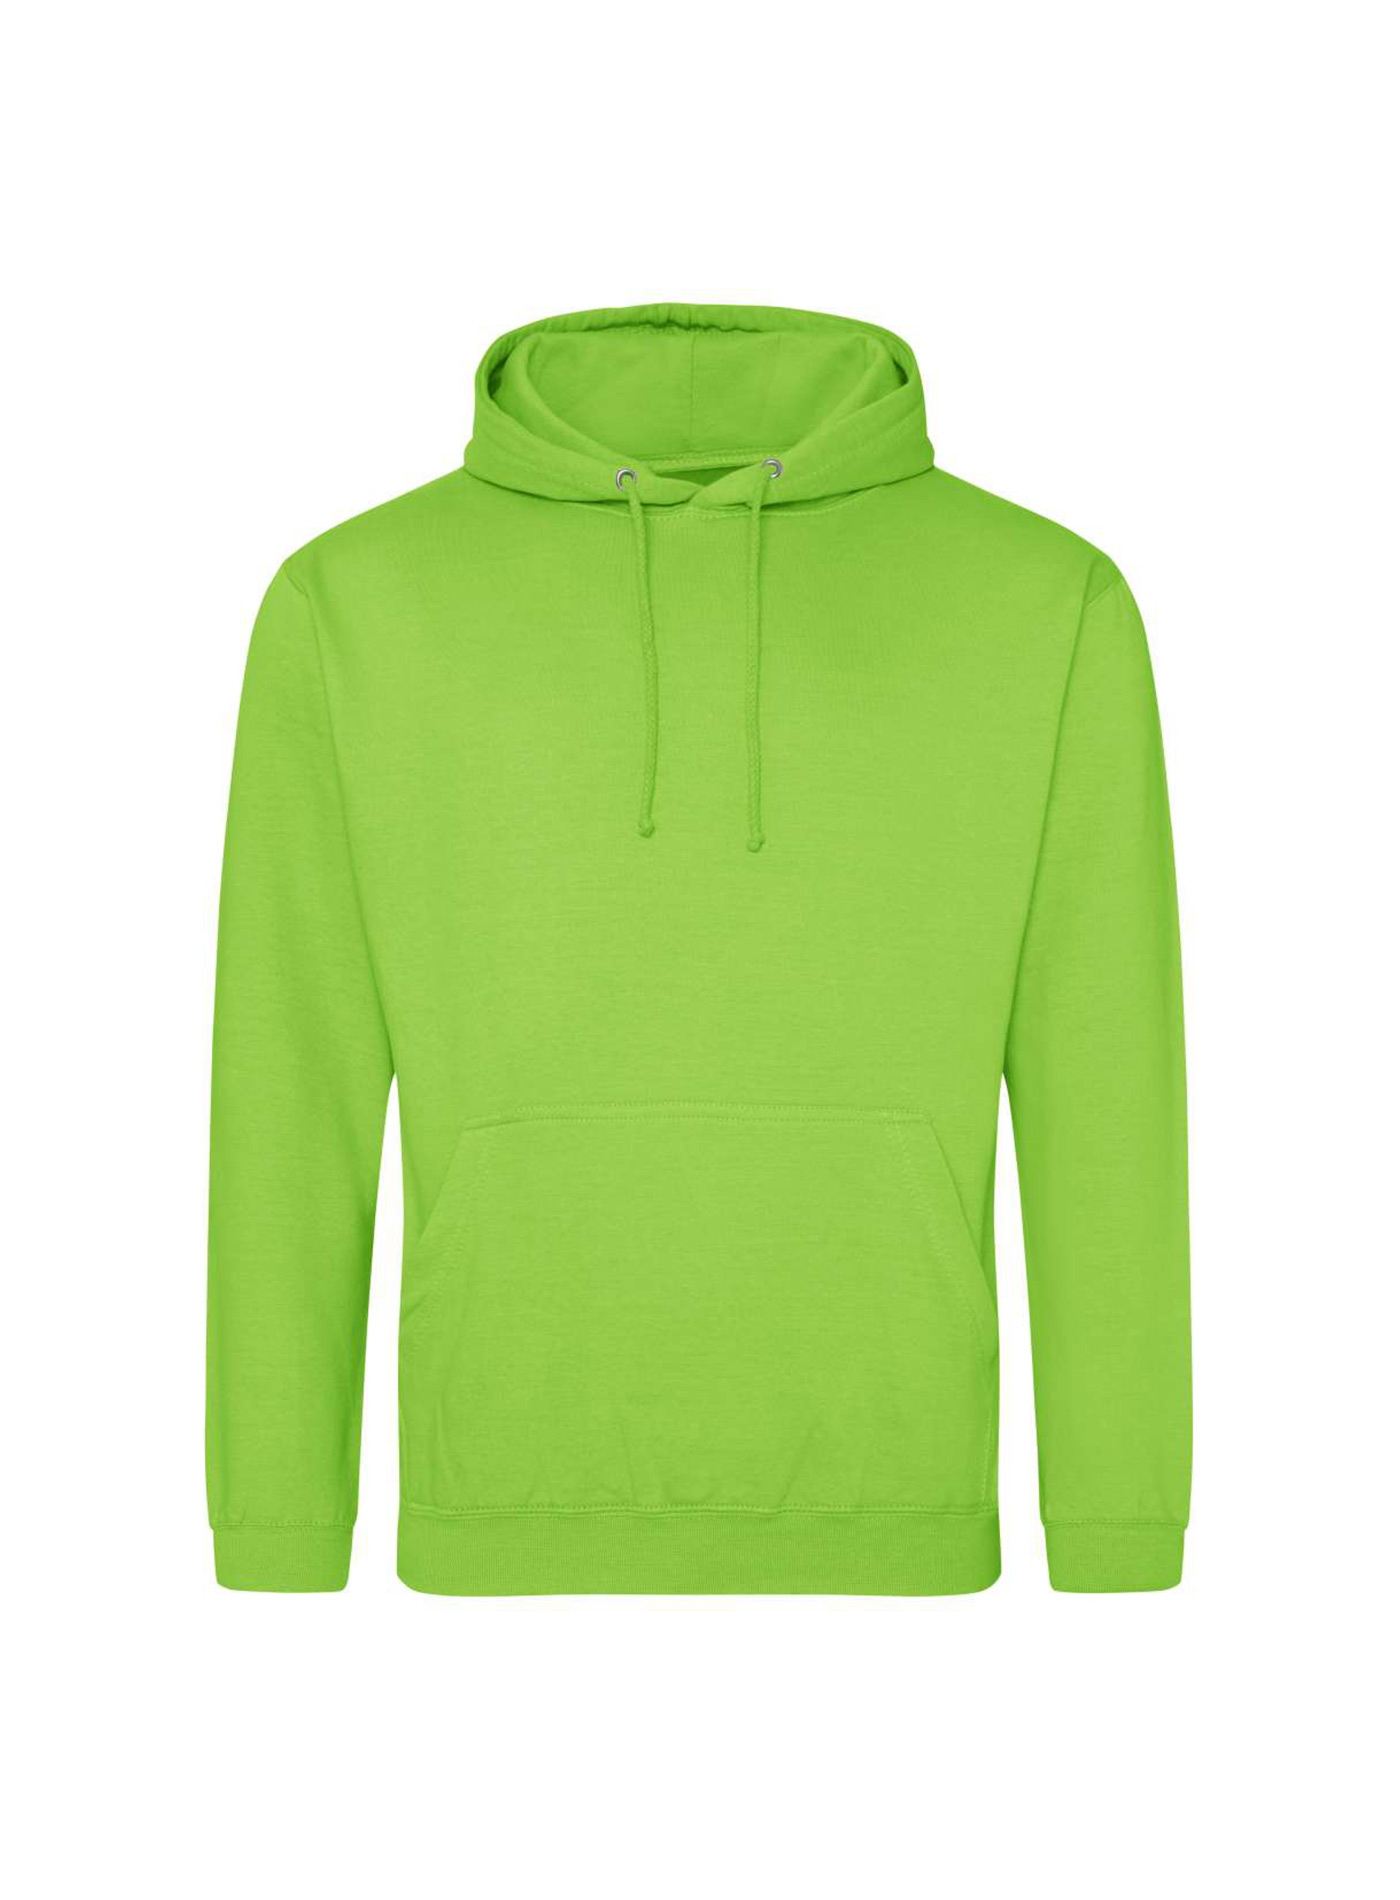 Mikina s kapucí unisex Just Hoods - Neonová zelená 3XL